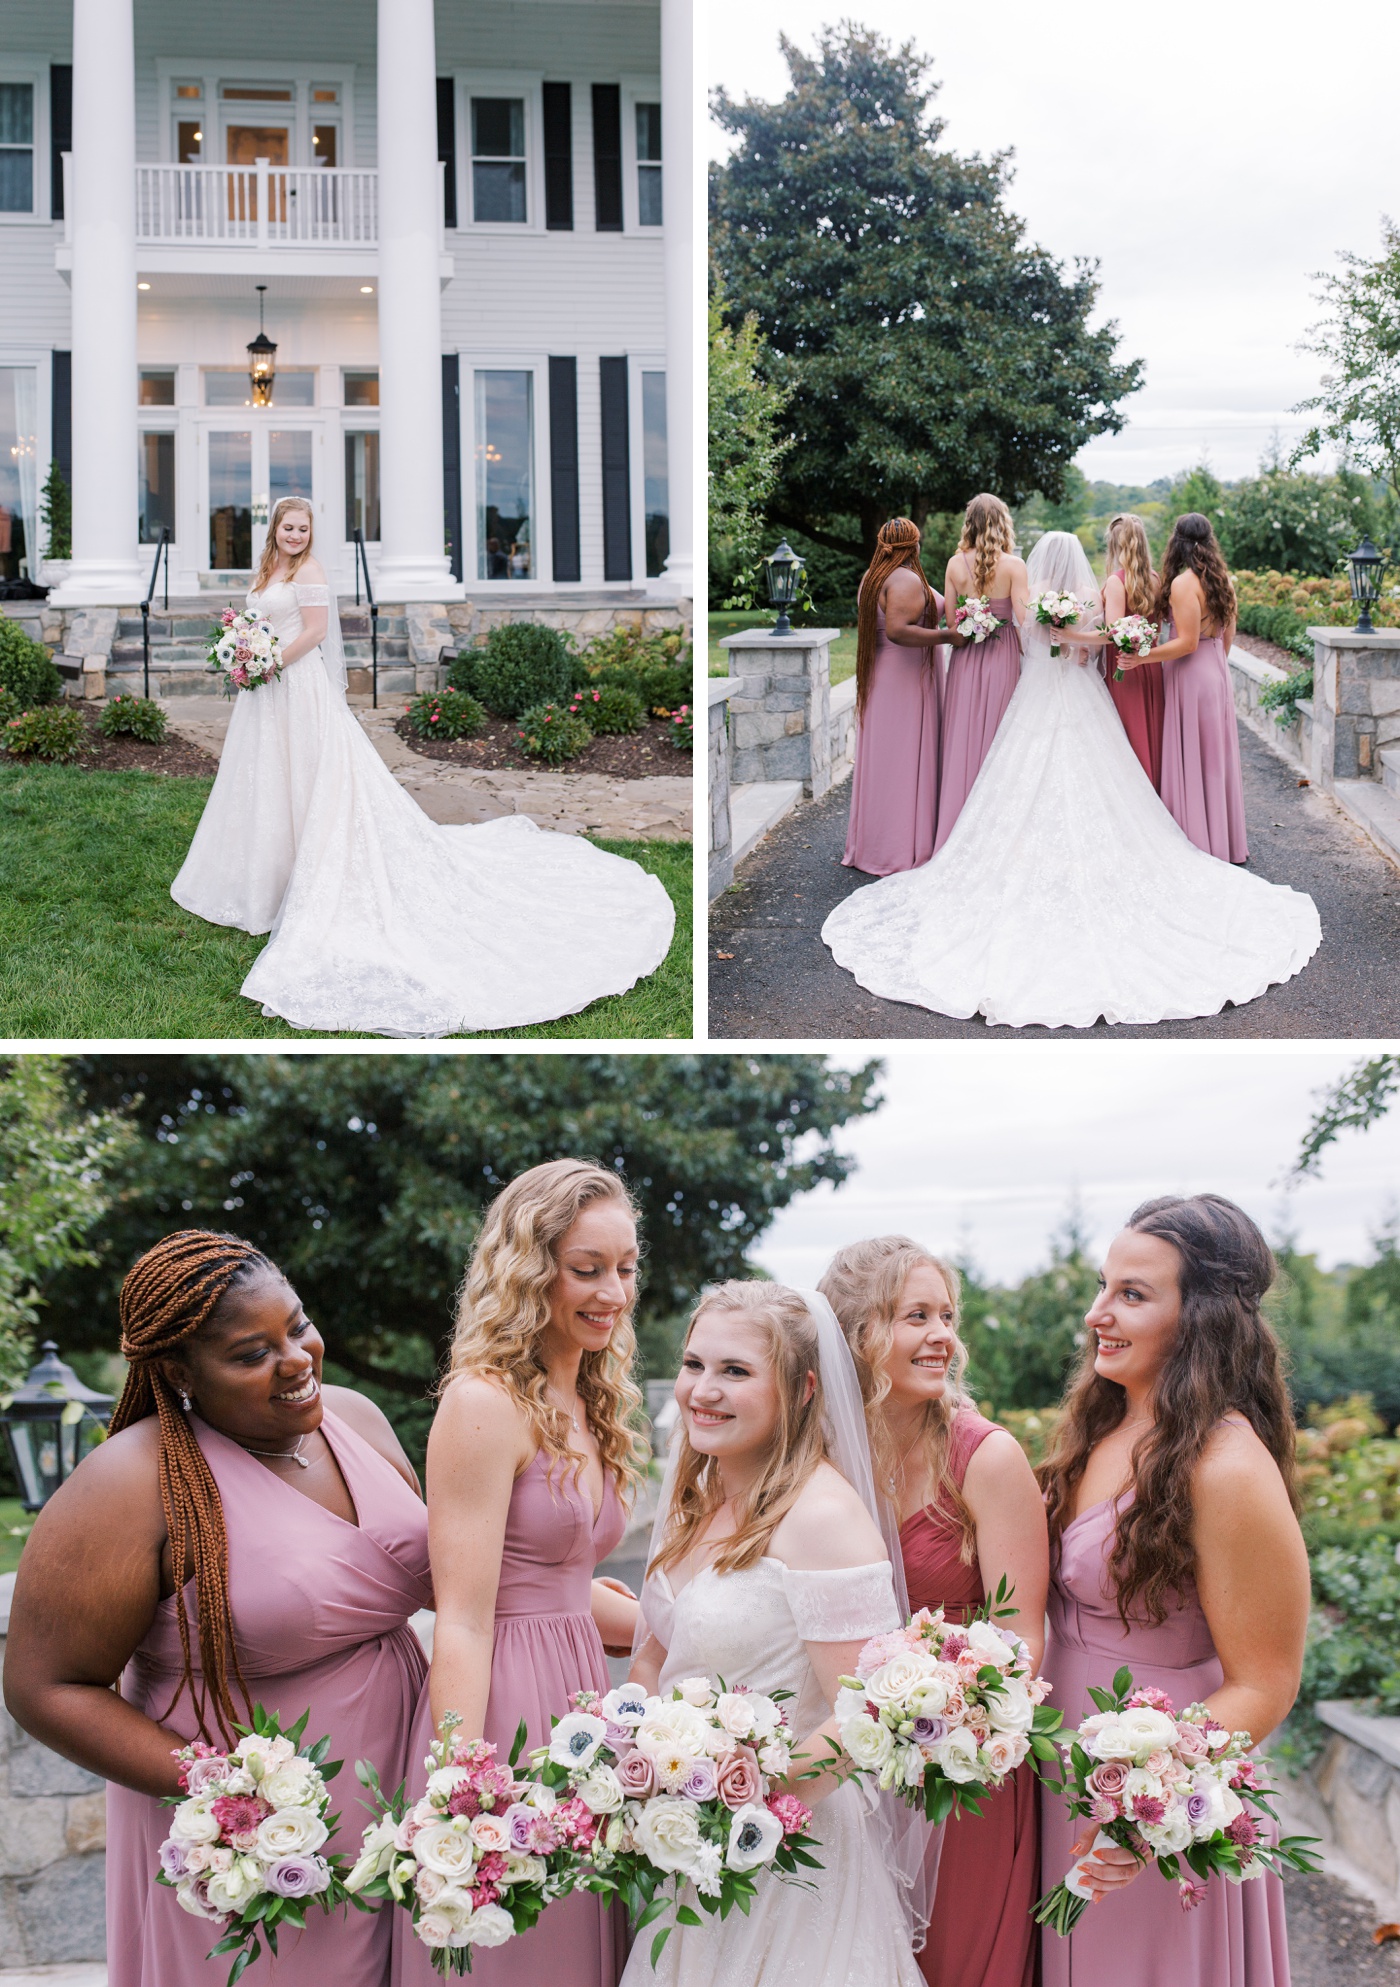 Blush and rose chiffon bridesmaids dresses by Azazie